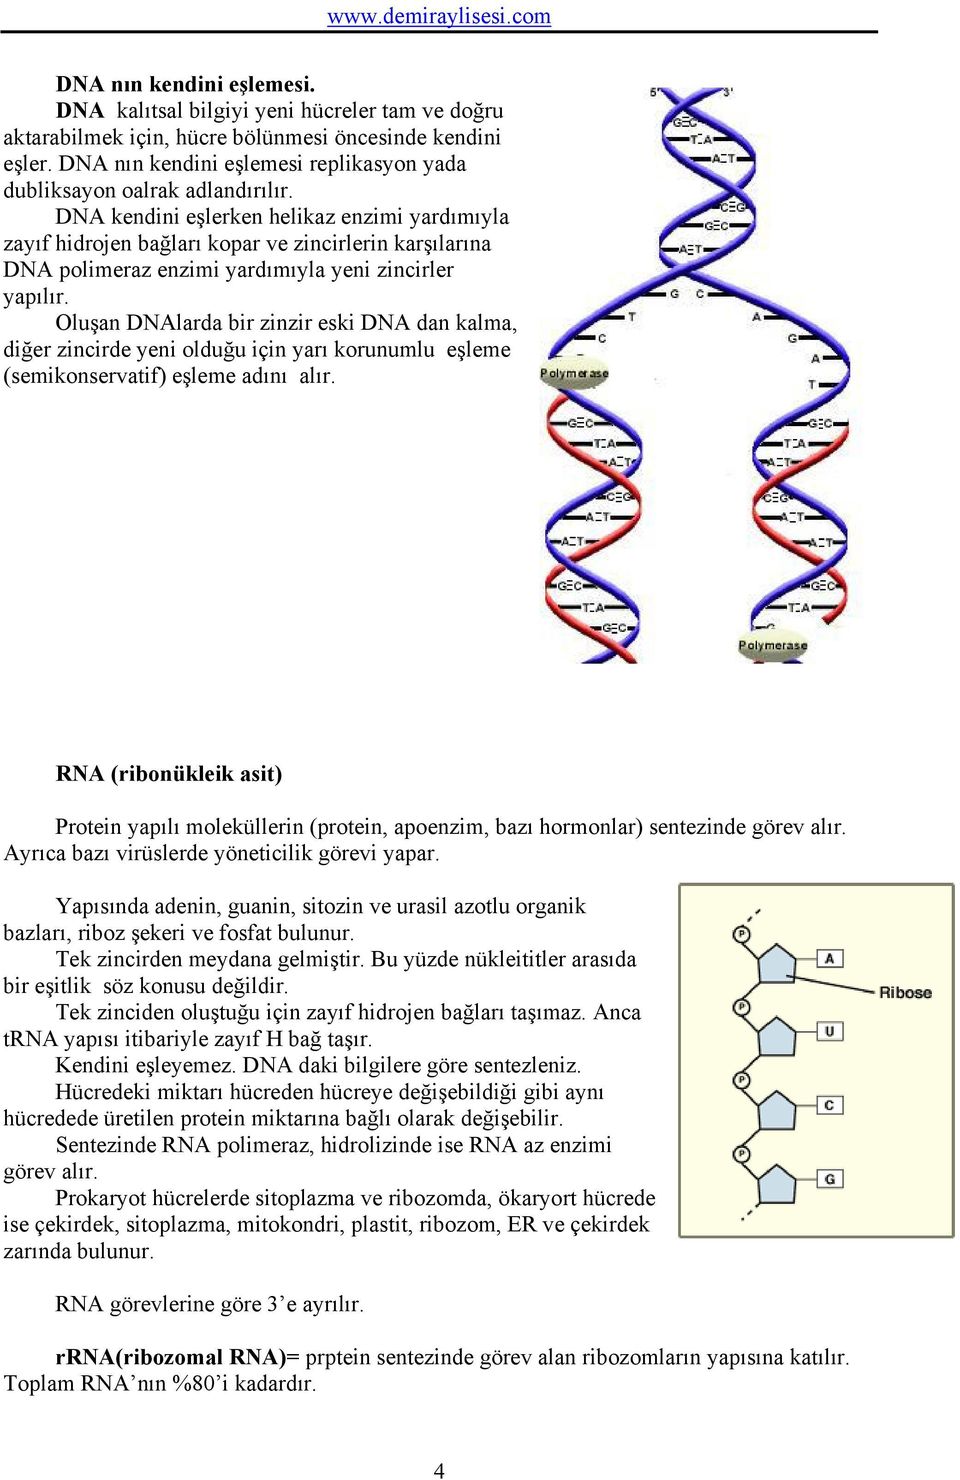 DNA kendini eşlerken helikaz enzimi yardımıyla zayıf hidrojen bağları kopar ve zincirlerin karşılarına DNA polimeraz enzimi yardımıyla yeni zincirler yapılır.